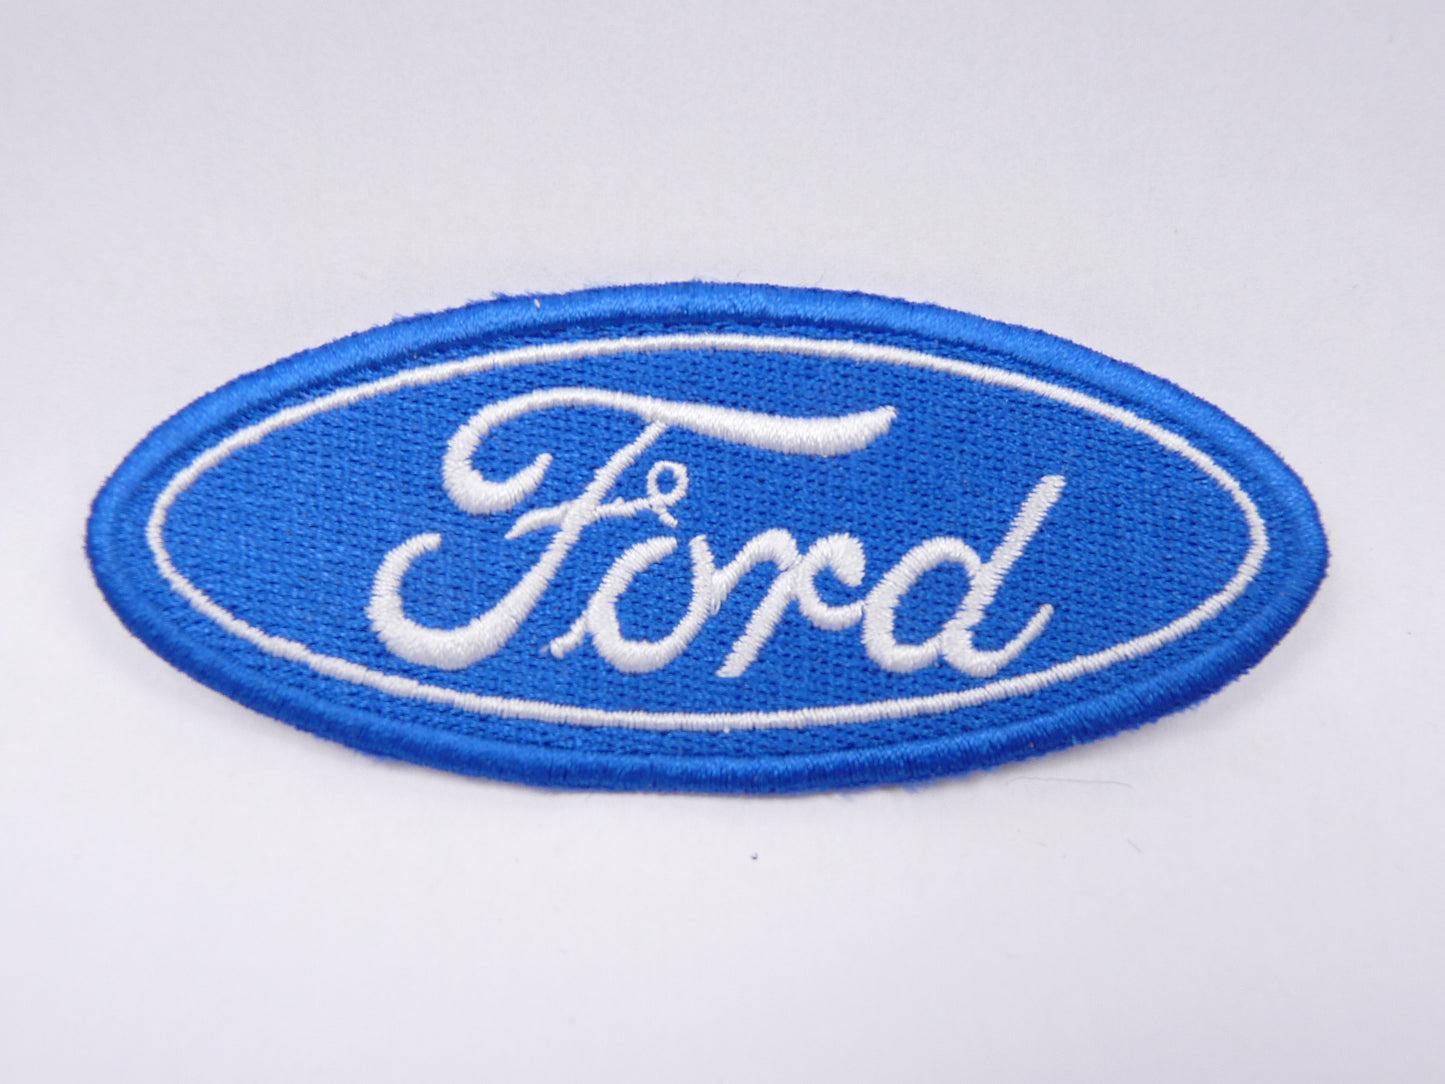 PTC61 Patch brodé thermocollé : logo Ford écriture largeur environ 9.5 cm hauteur environ 3.9 cm